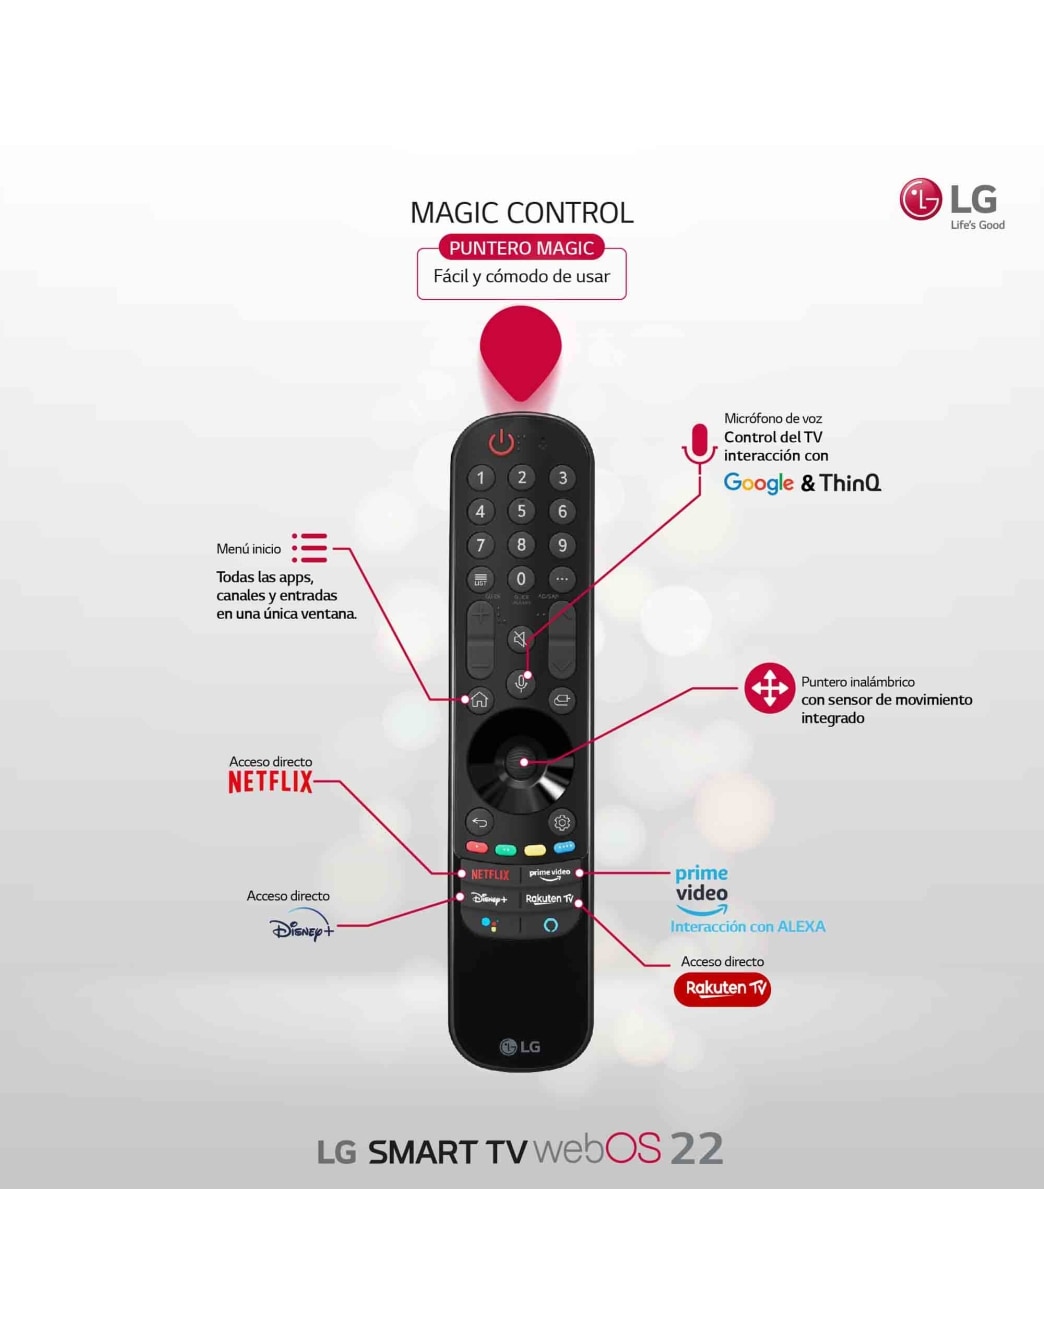 Televisor LG 50QNED816QA - 50'', Smart TV, 4K - ComproFacil